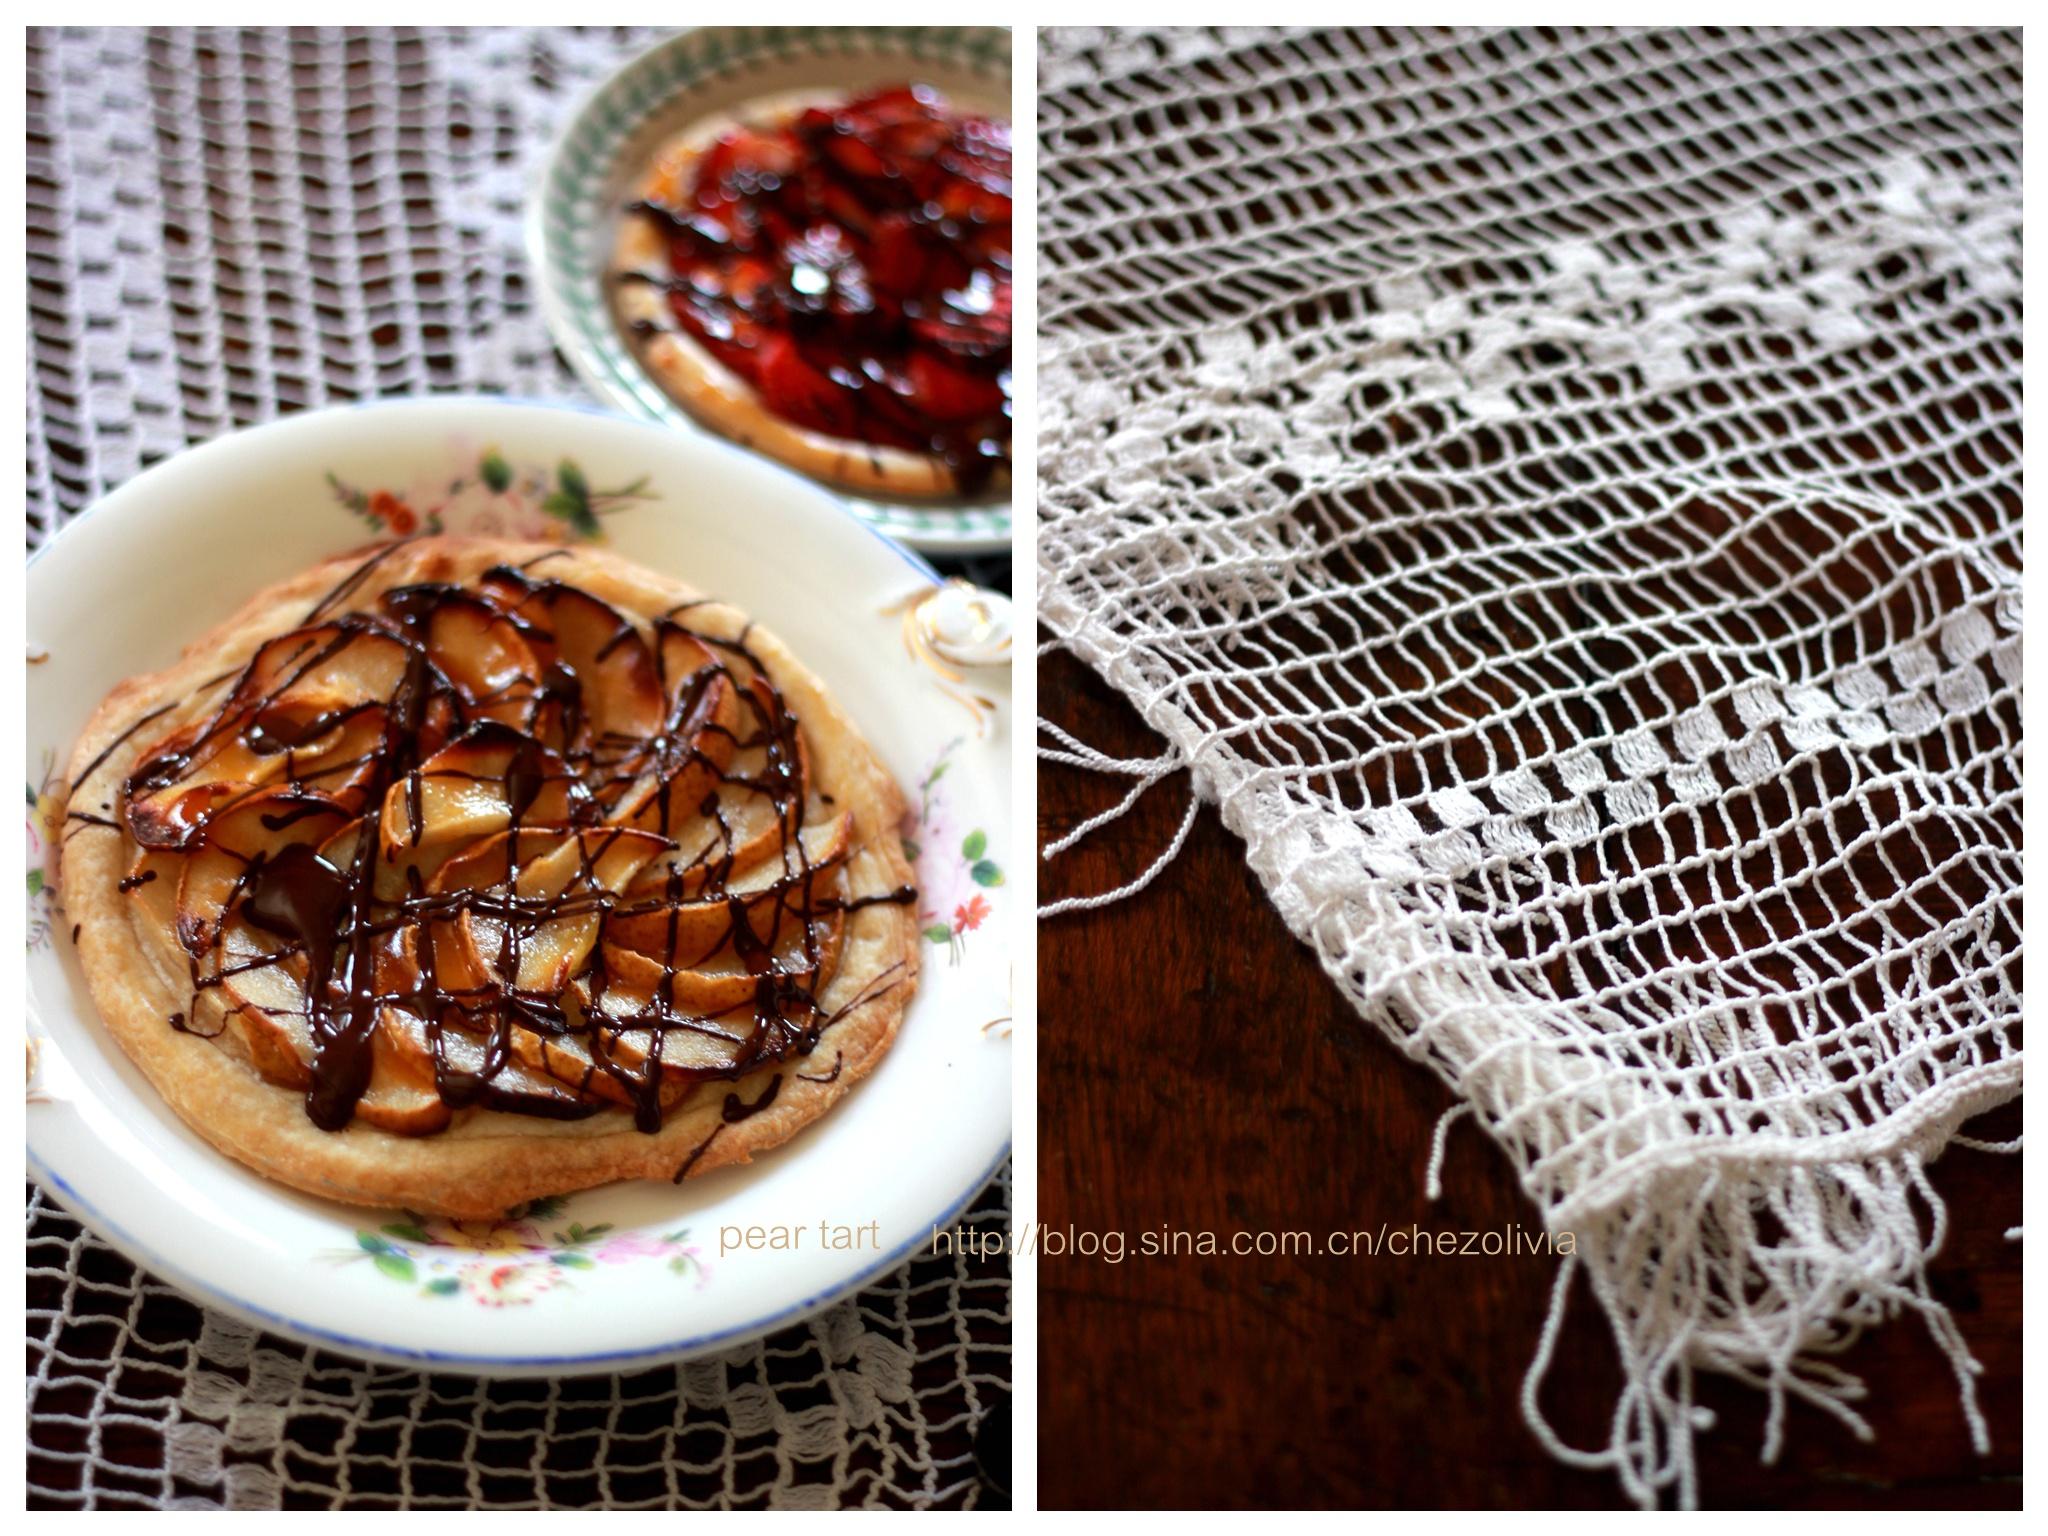 草莓塔&梨塔/Strawberry tart and pear tart的做法